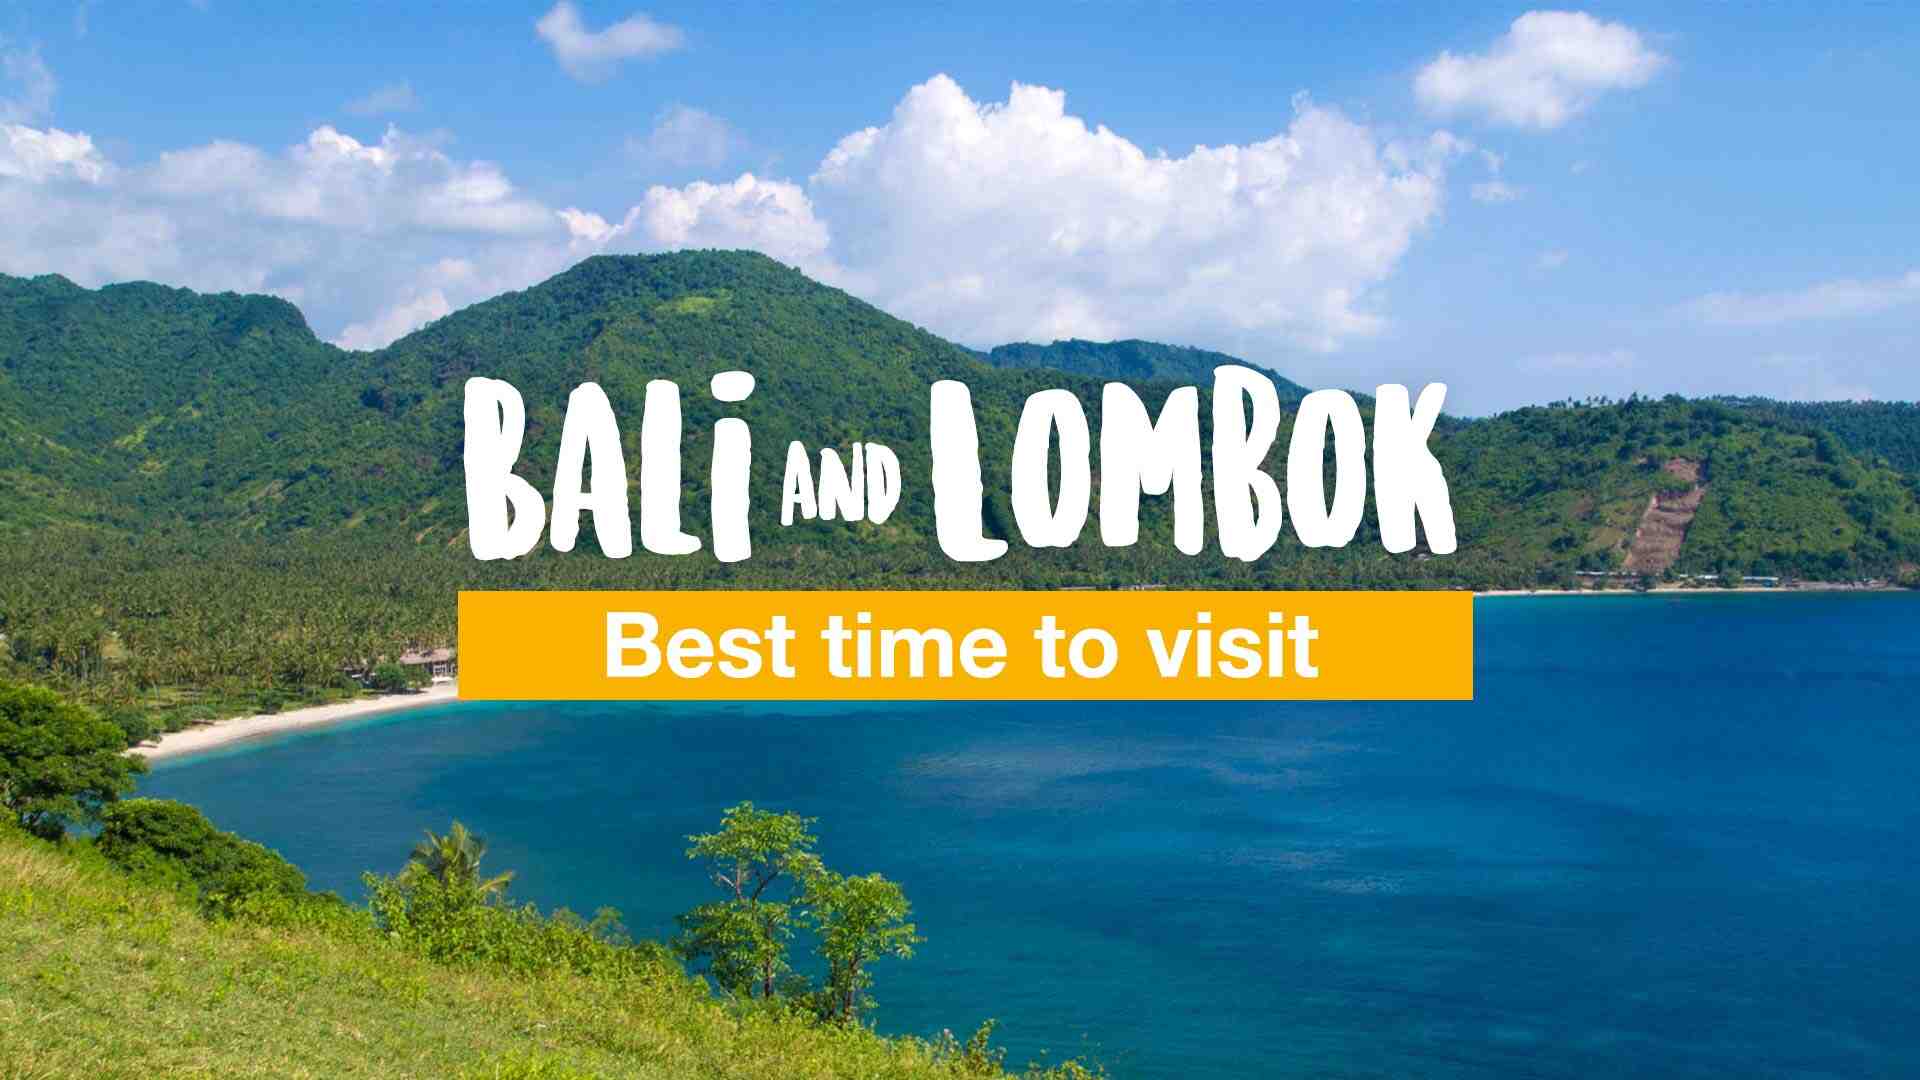 Quelle saison pour aller à Bali ?